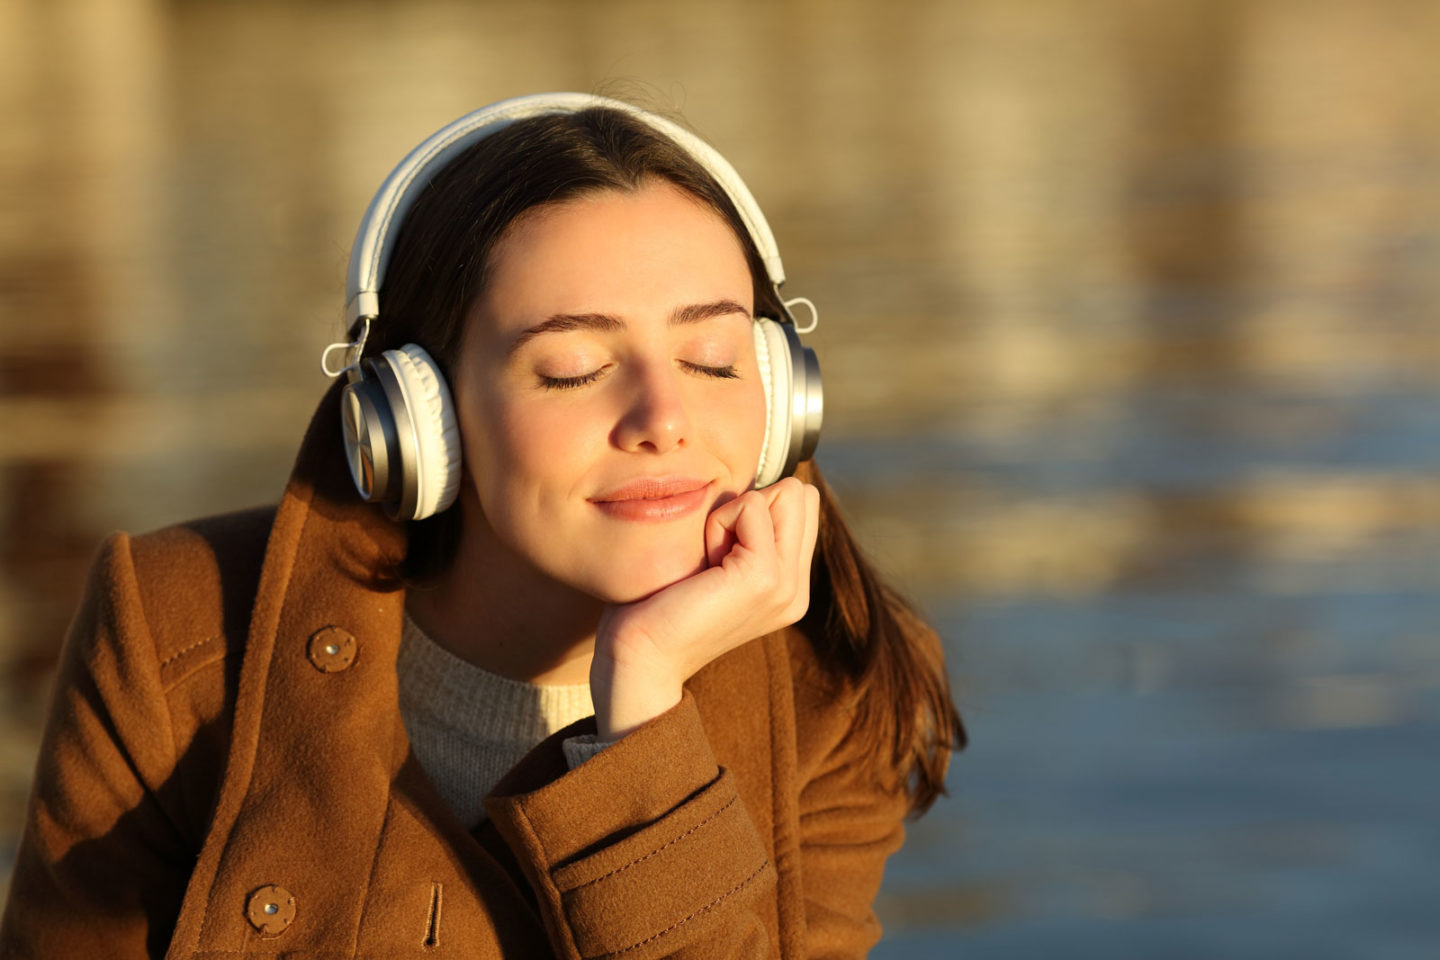 علميًا، كيف يمكن اختيار سماعات الرأس التي تناسب ذوقك الموسيقي؟